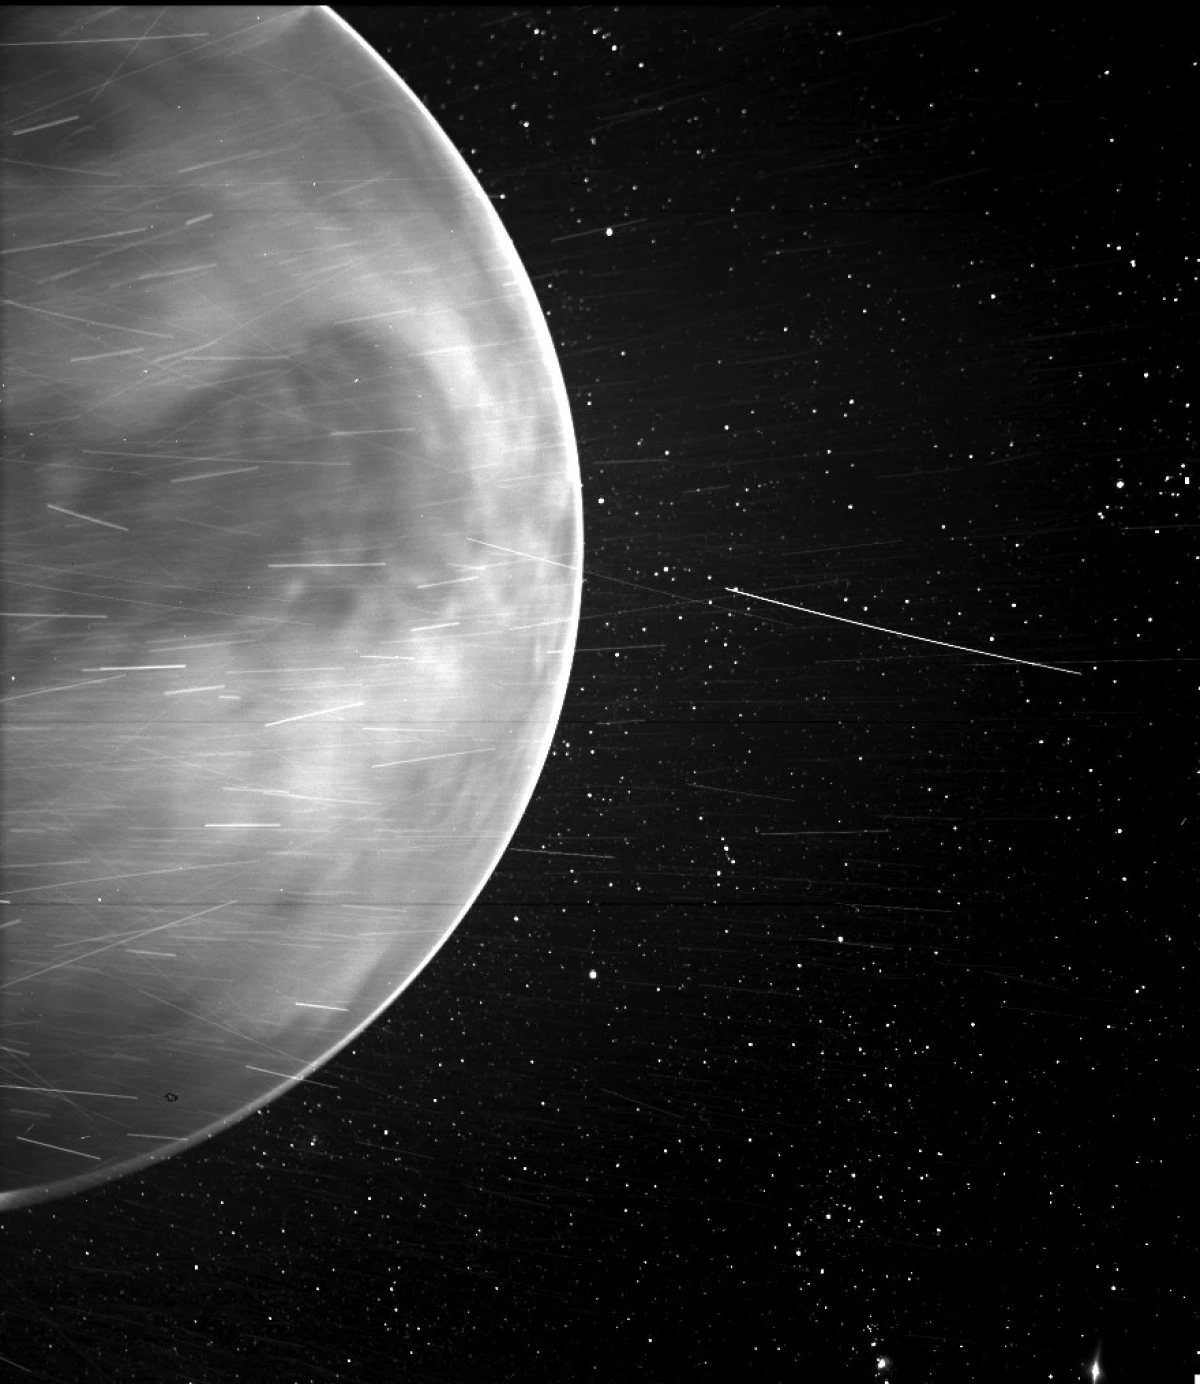 Flying na Venus, Parker Probe Solar aliona kile ambacho hakuwa na: aliweza kuangalia kwa ajali chini ya mawingu mnene 4446_1